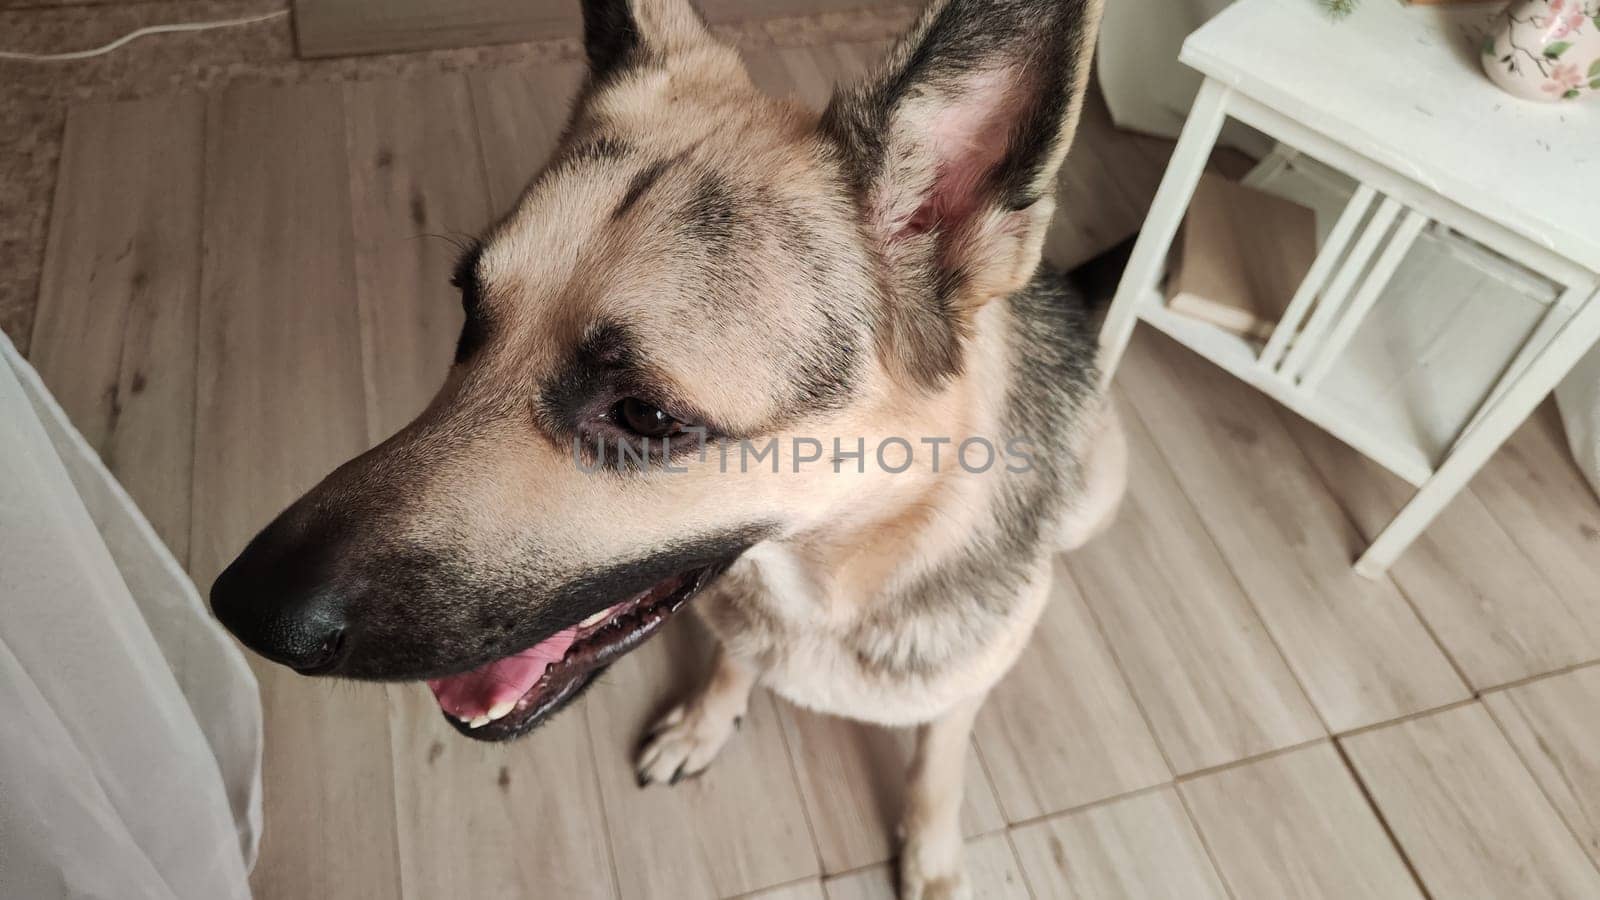 Dog German Shepherd inside of room. Russian eastern European dog veo indoors